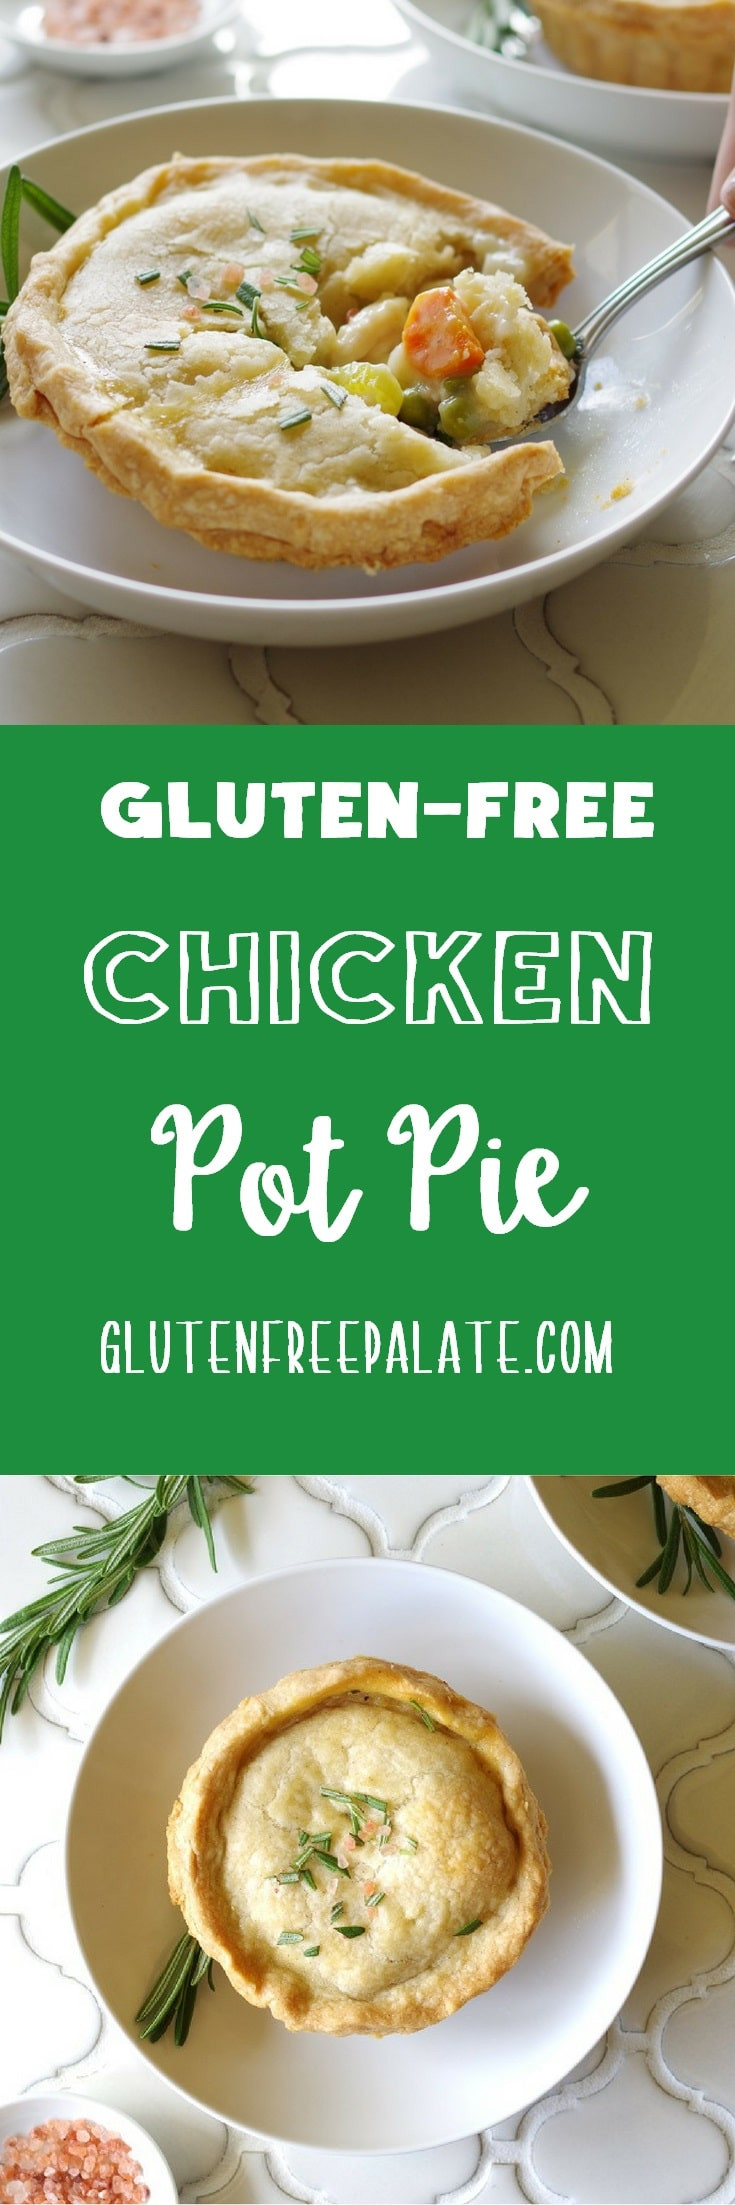 Gluten Free Chicken Pot Pie
 Gluten Free Chicken Pot Pie